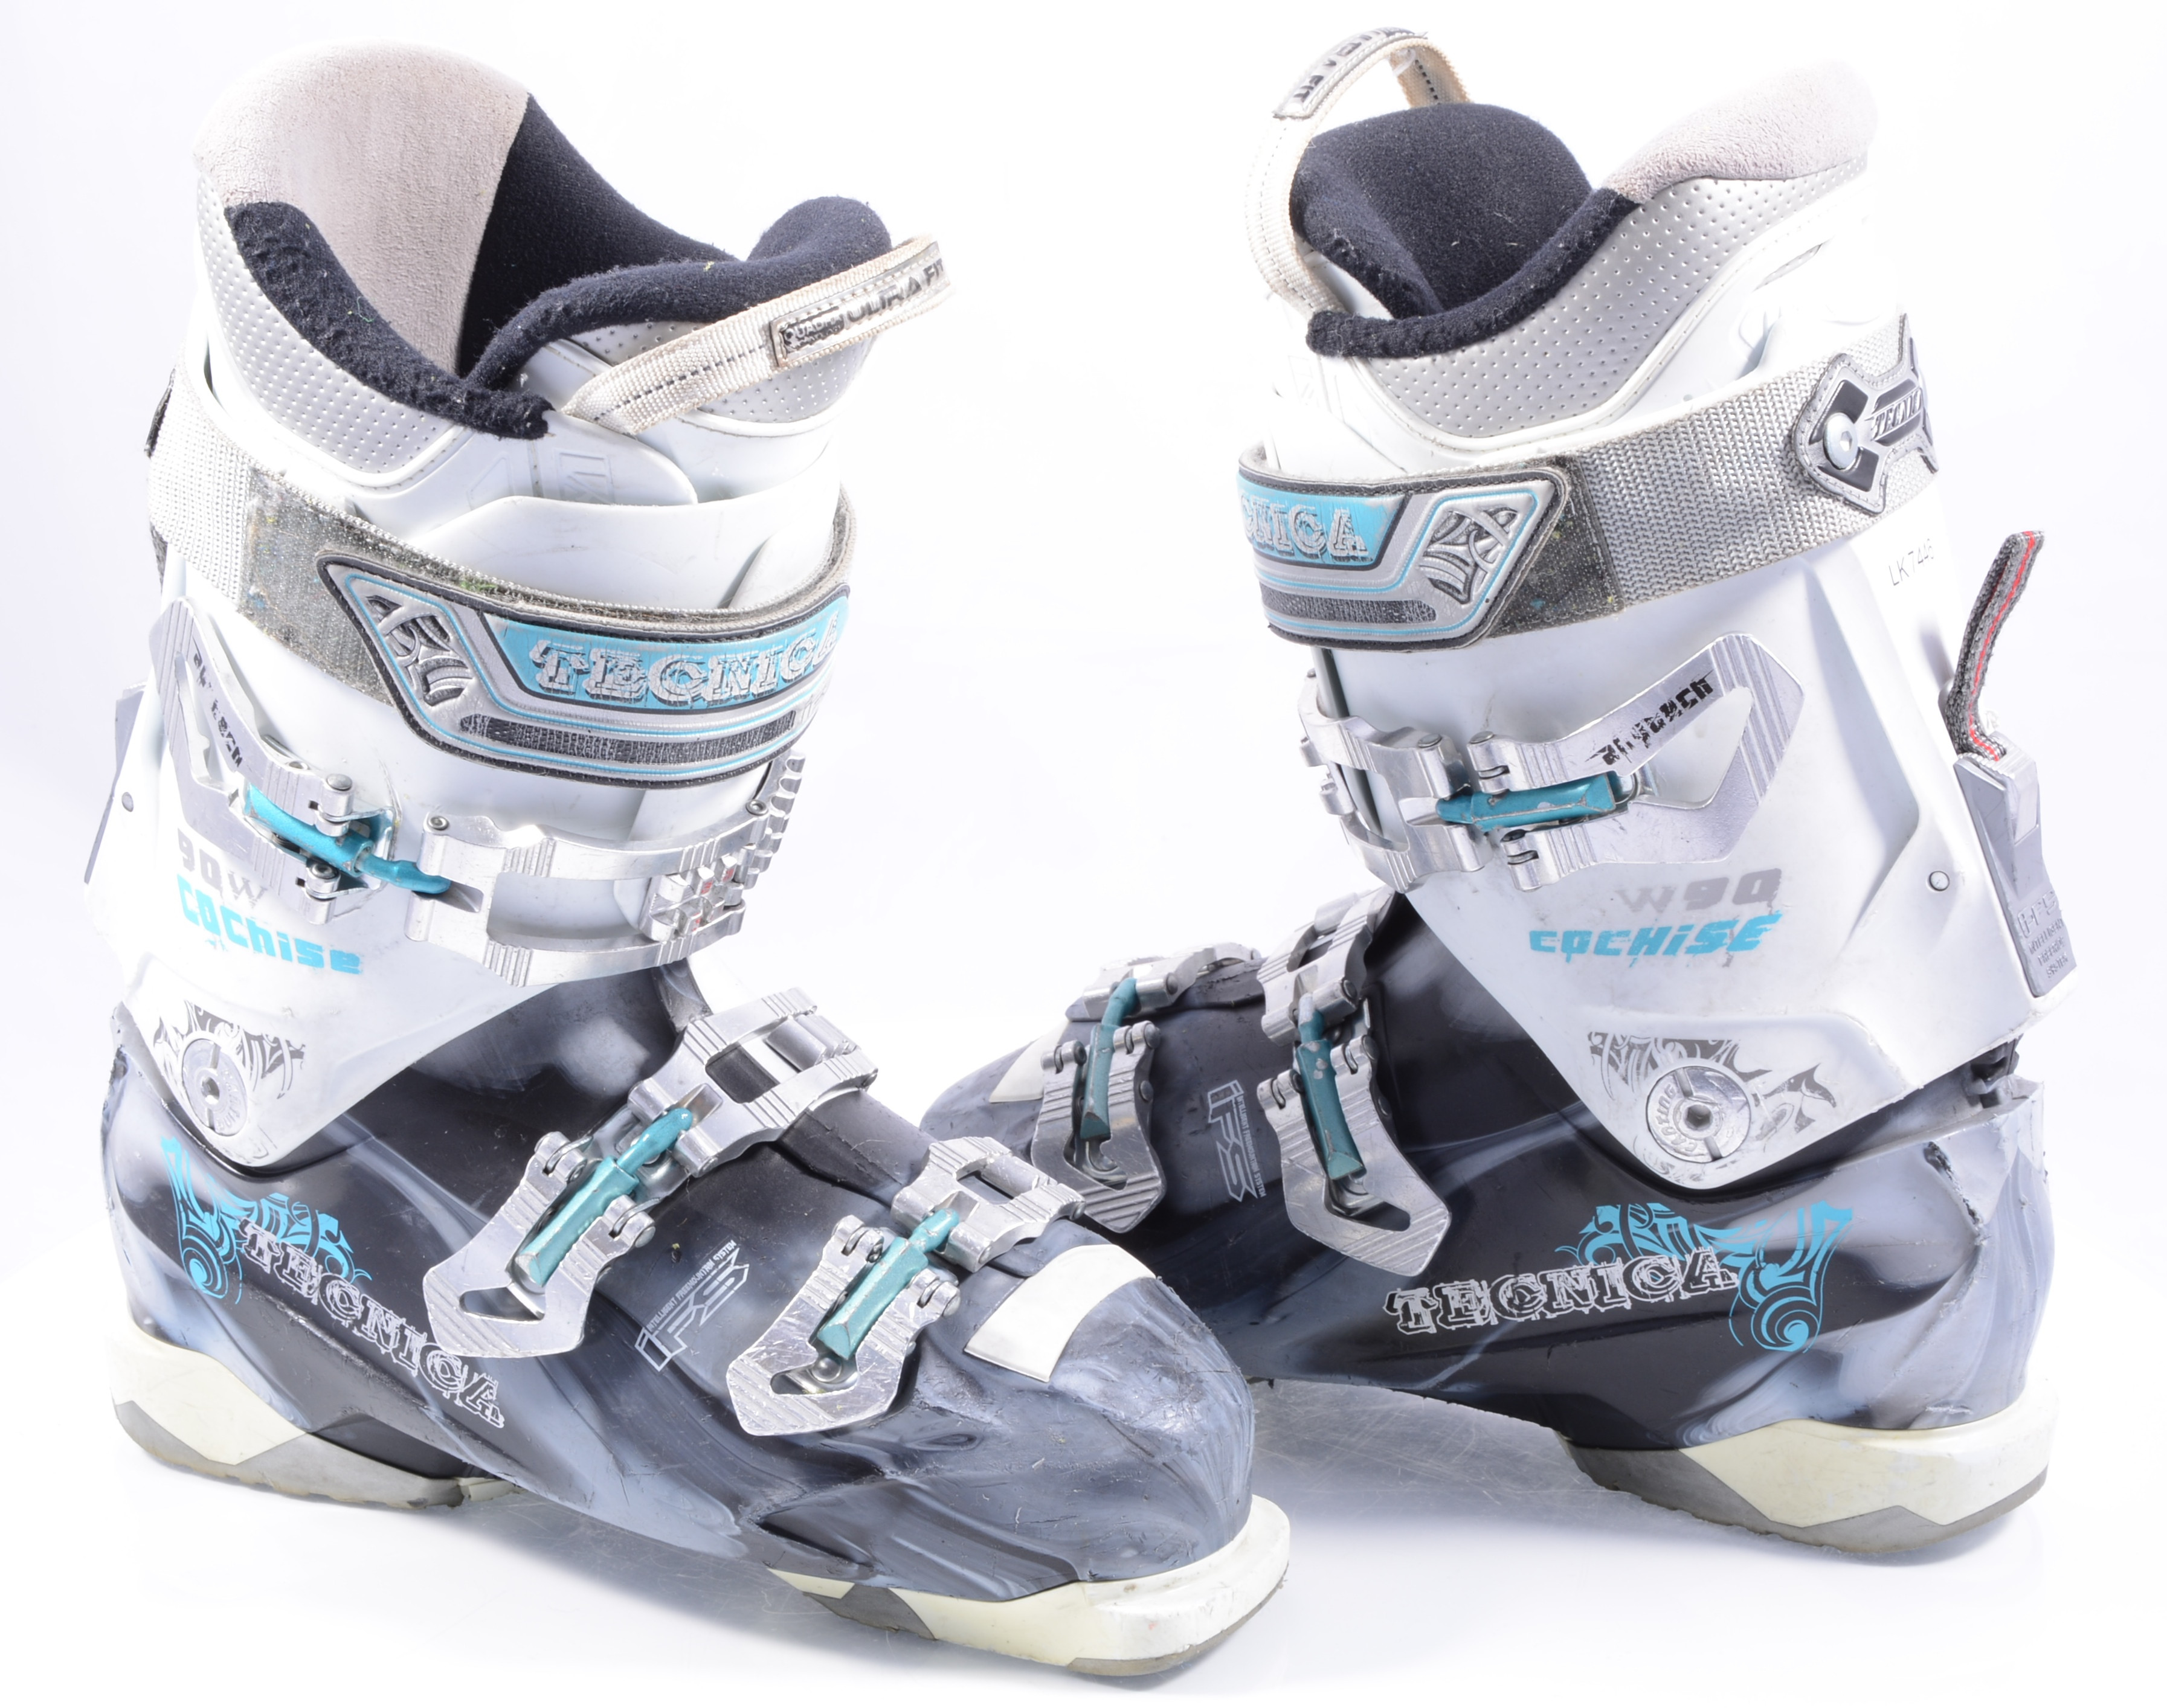 women's ski boots TECNICA COCHISE 90 W, IFS system QUADRA ultra fit,  SKI/WALK, micro, macro, canting